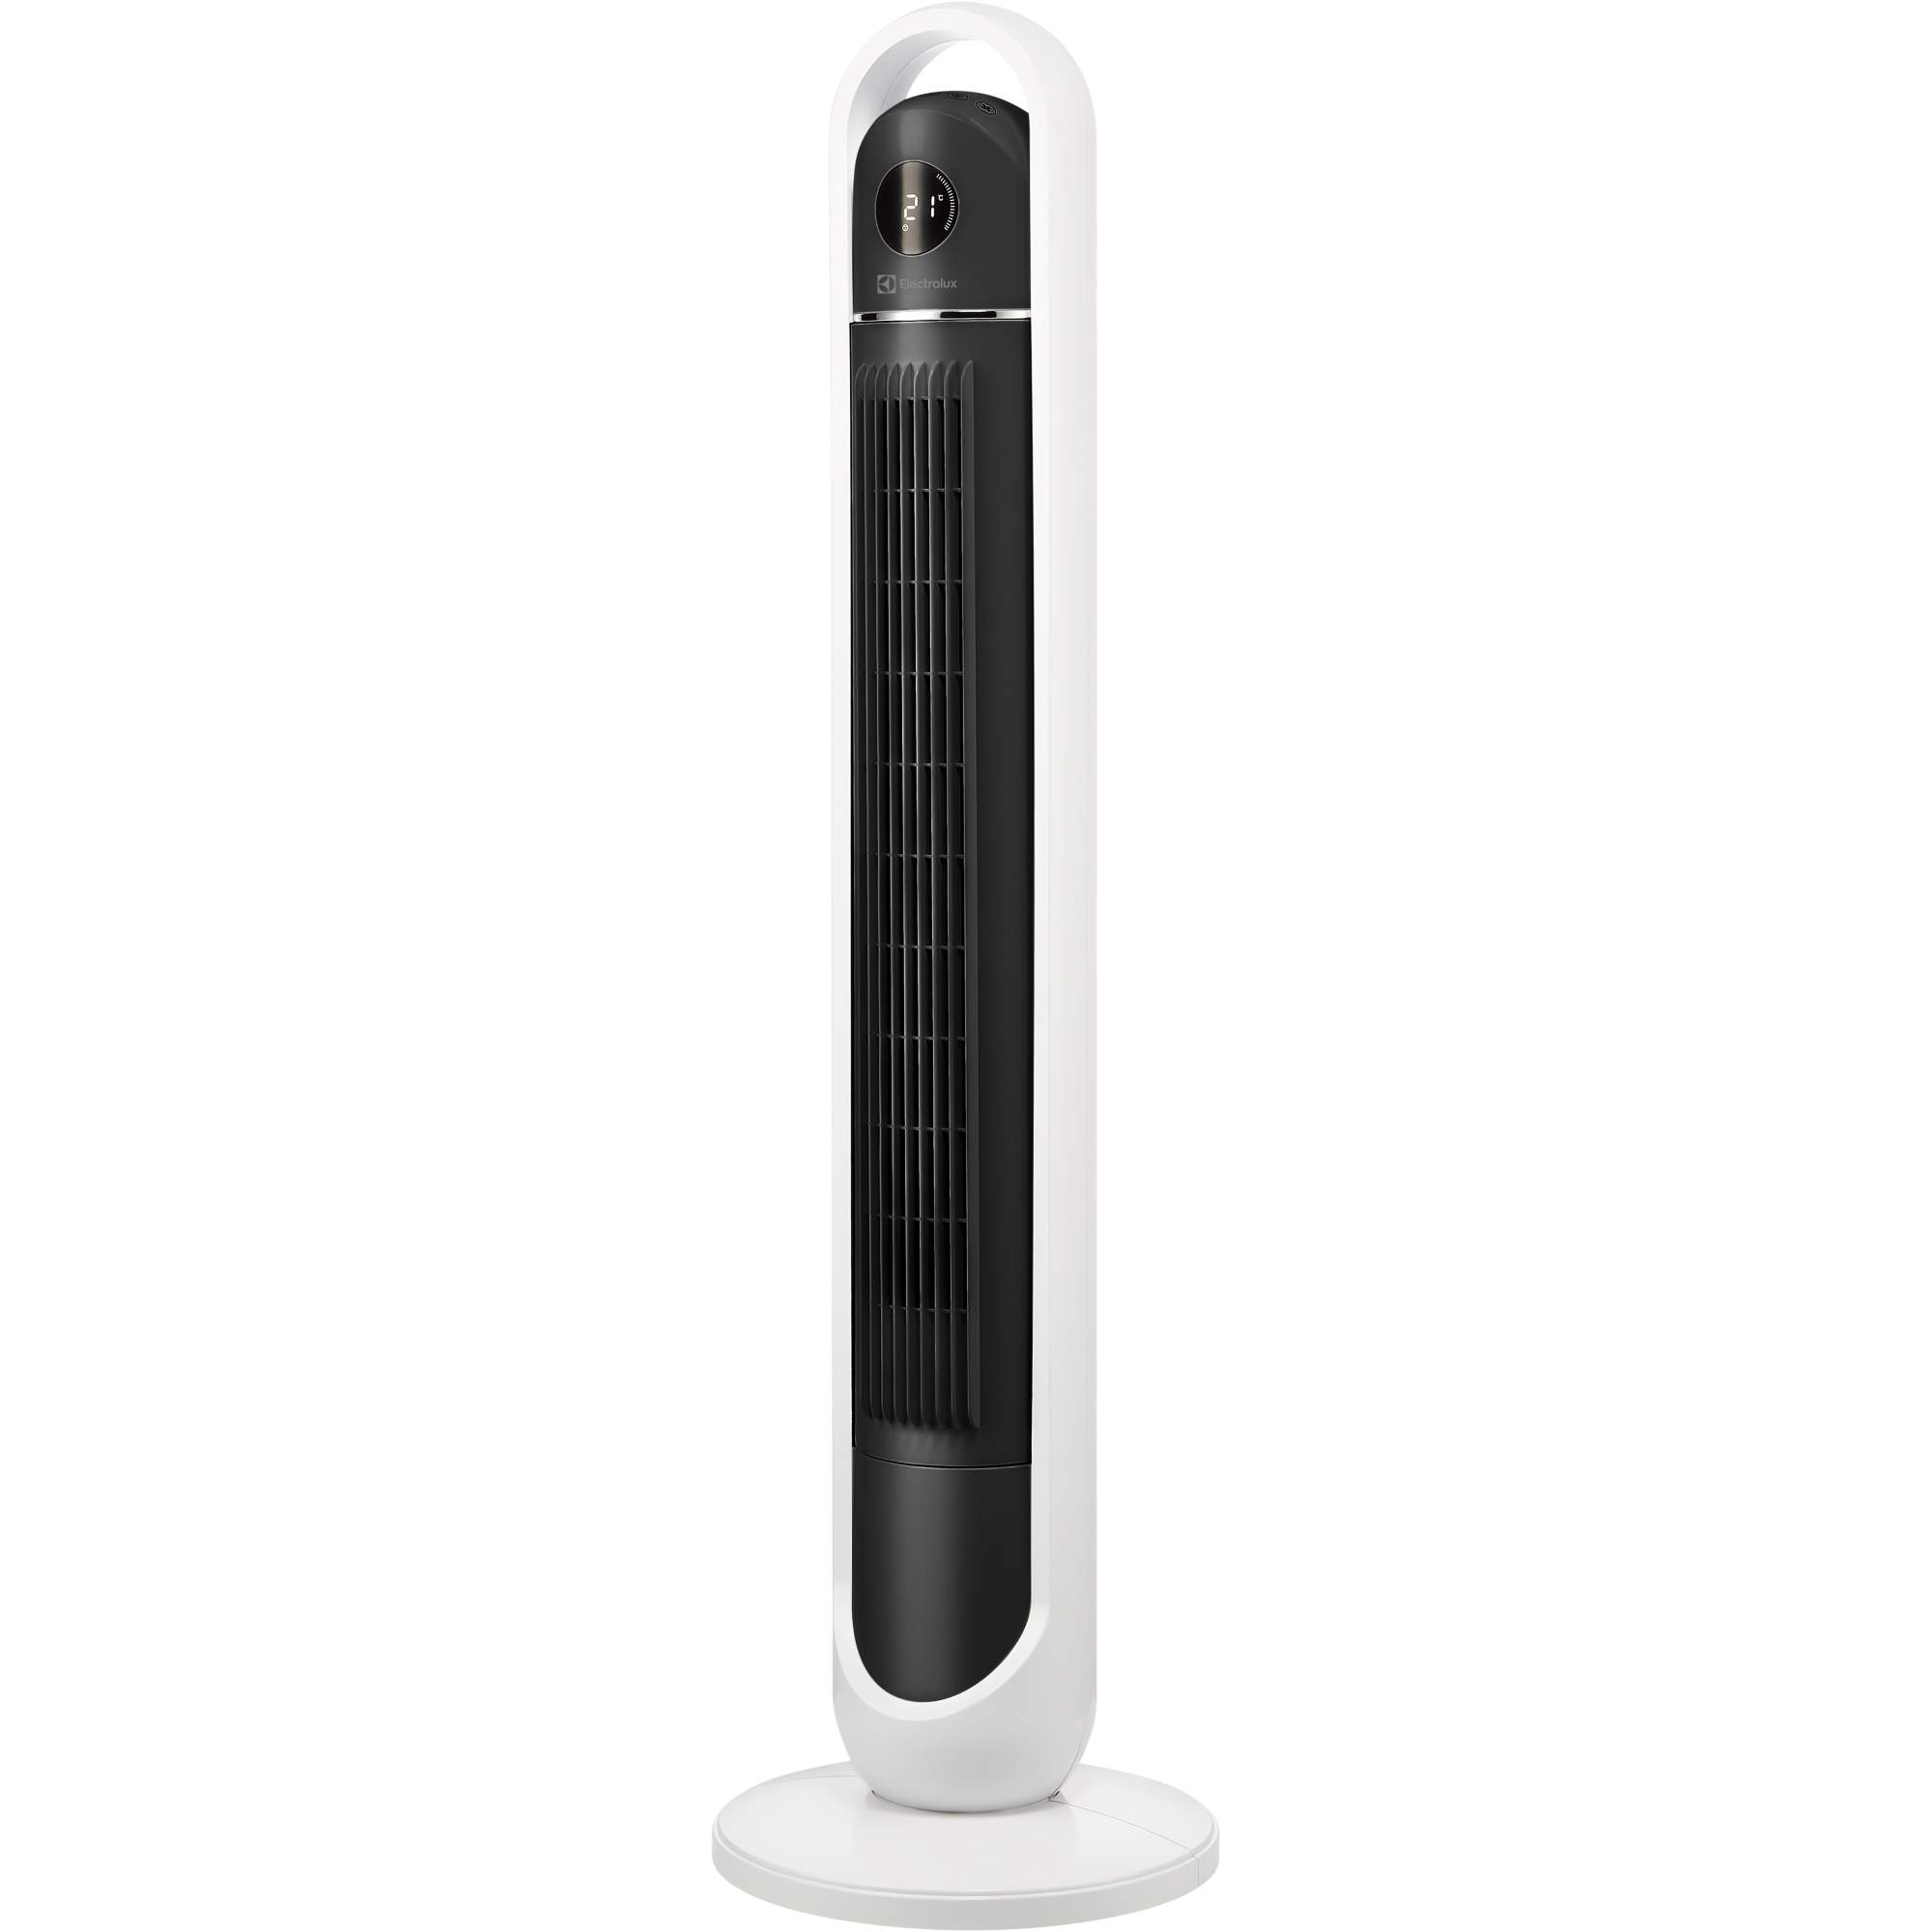 Вентилятор настольный Electrolux EFT-1110i белый, купить в Москве, цены в интернет-магазинах на Мегамаркет